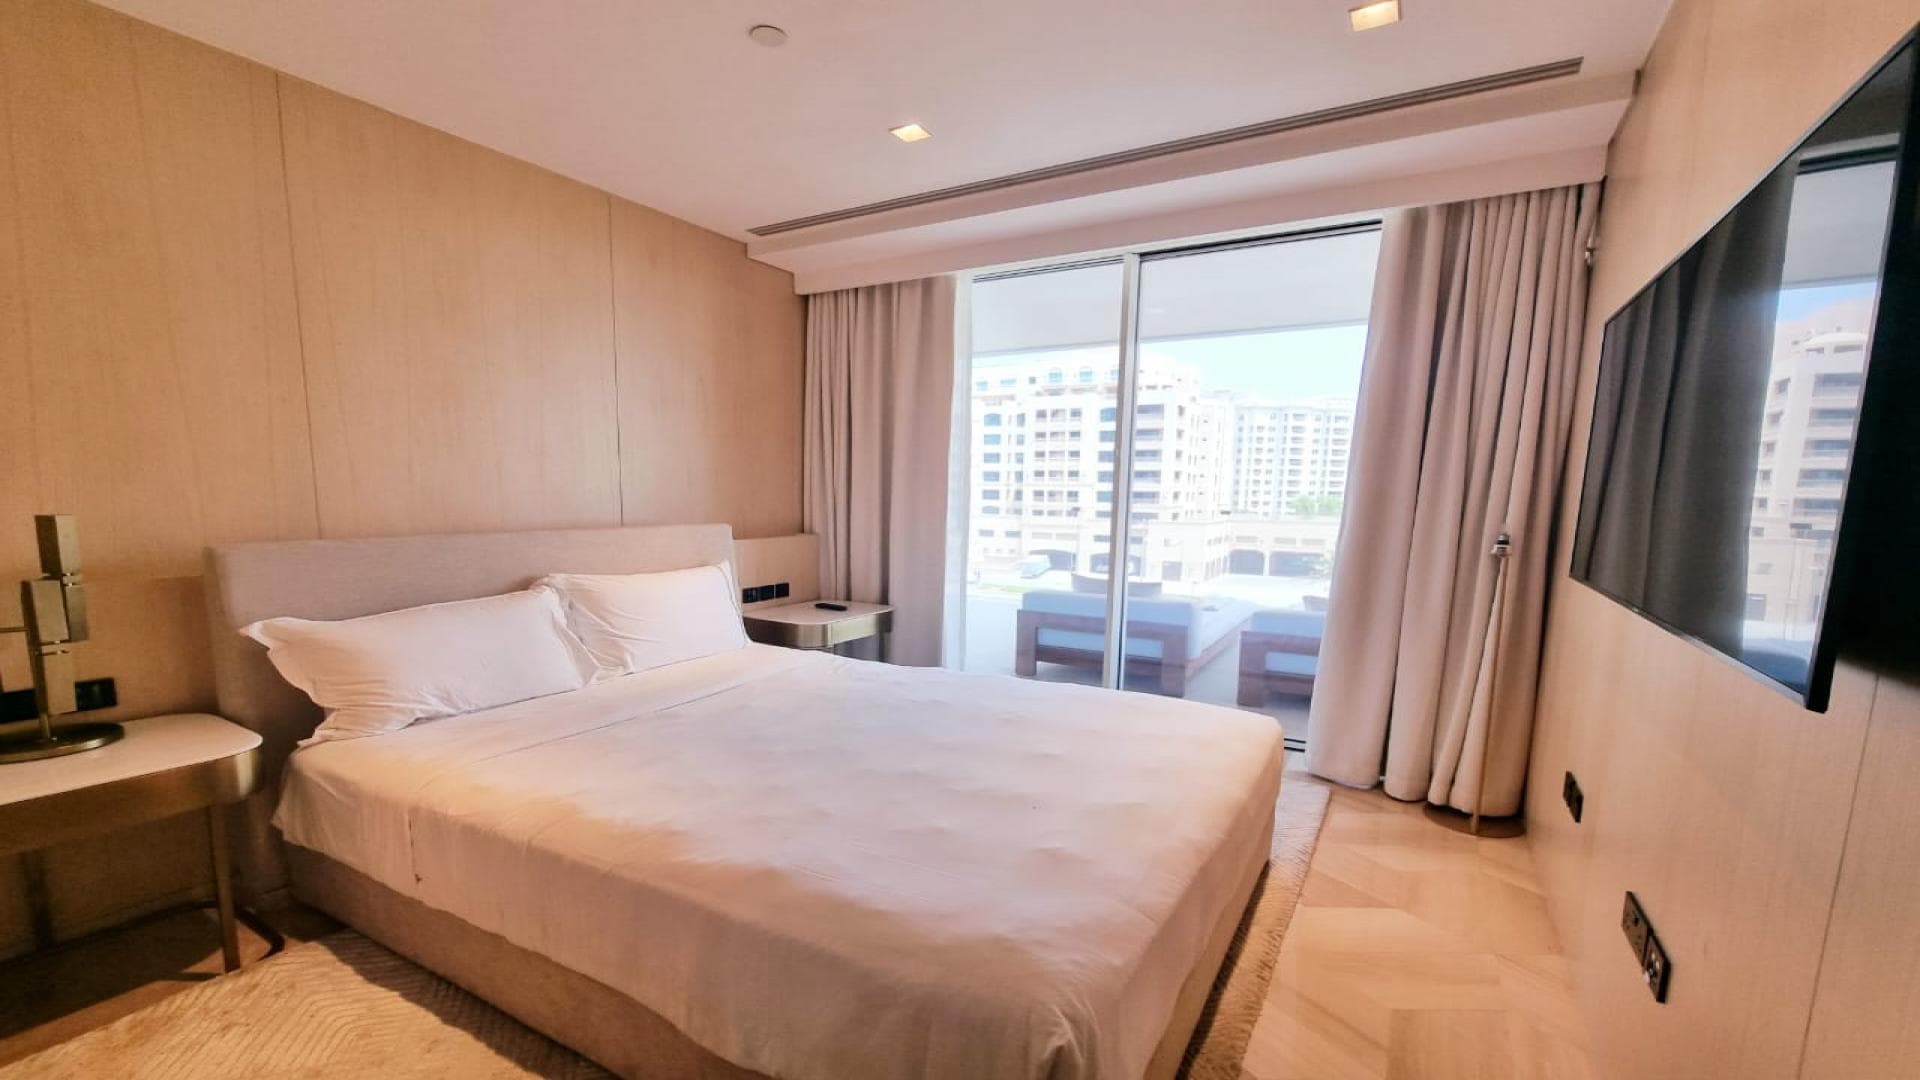 3 Bedroom Apartment For Rent Al Thamam 43 Lp37274 2002435902eddc00.jpeg